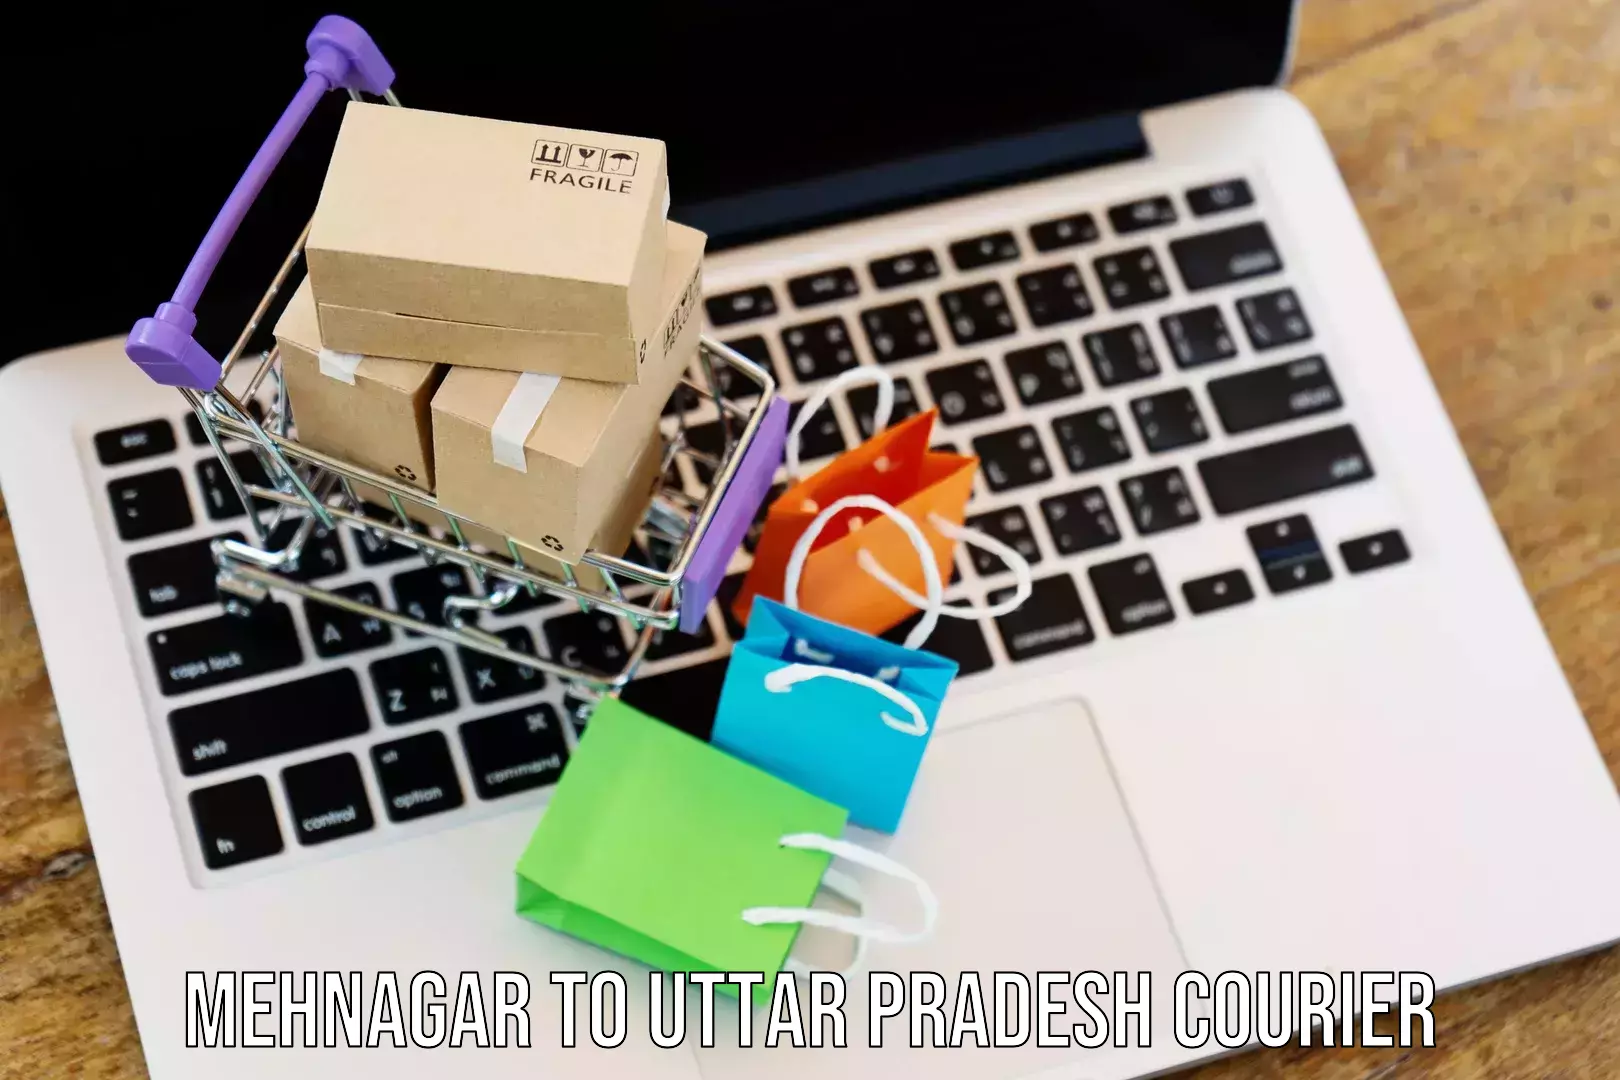 Modern parcel services Mehnagar to Noida